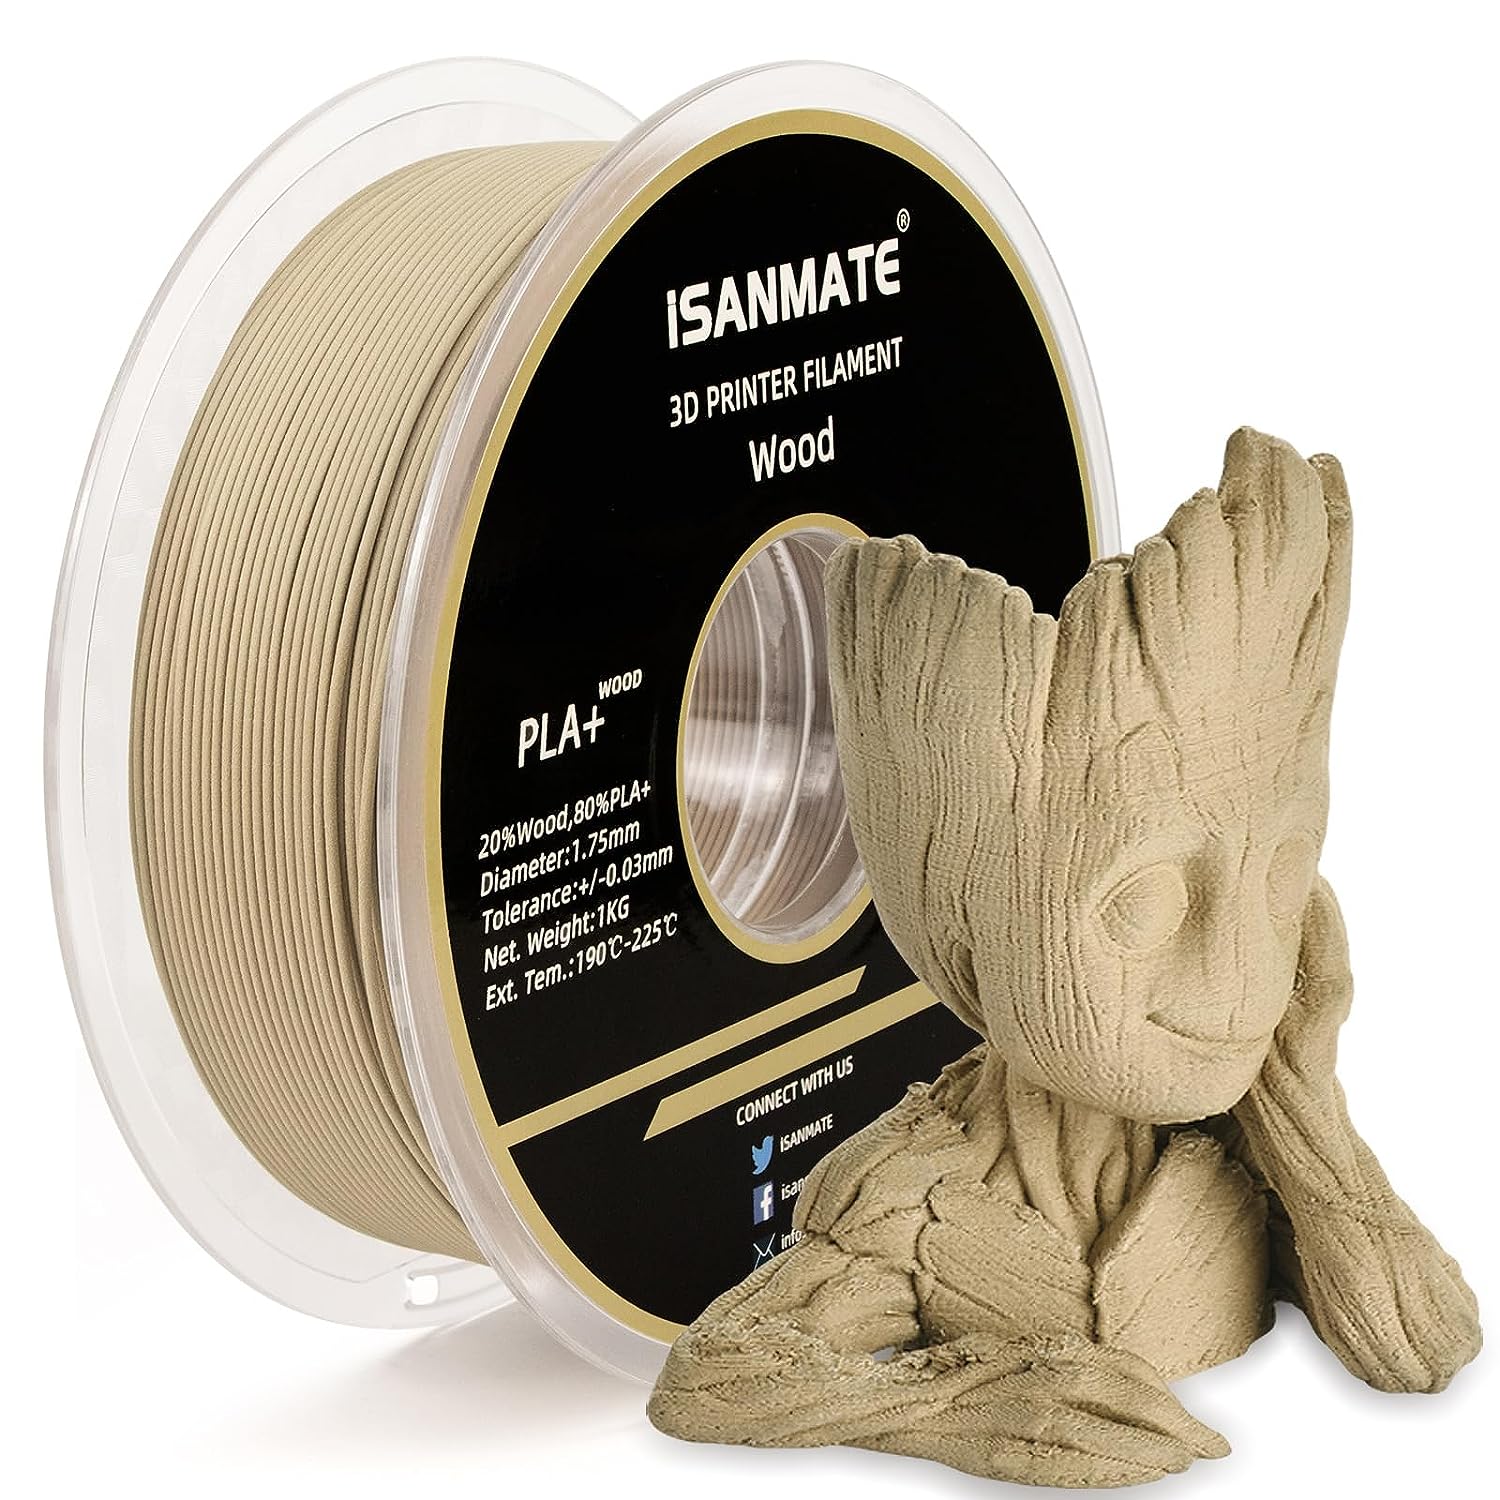 iSANMATE Wood Filament 1.75mm, PLA+ Wood Filament [...]